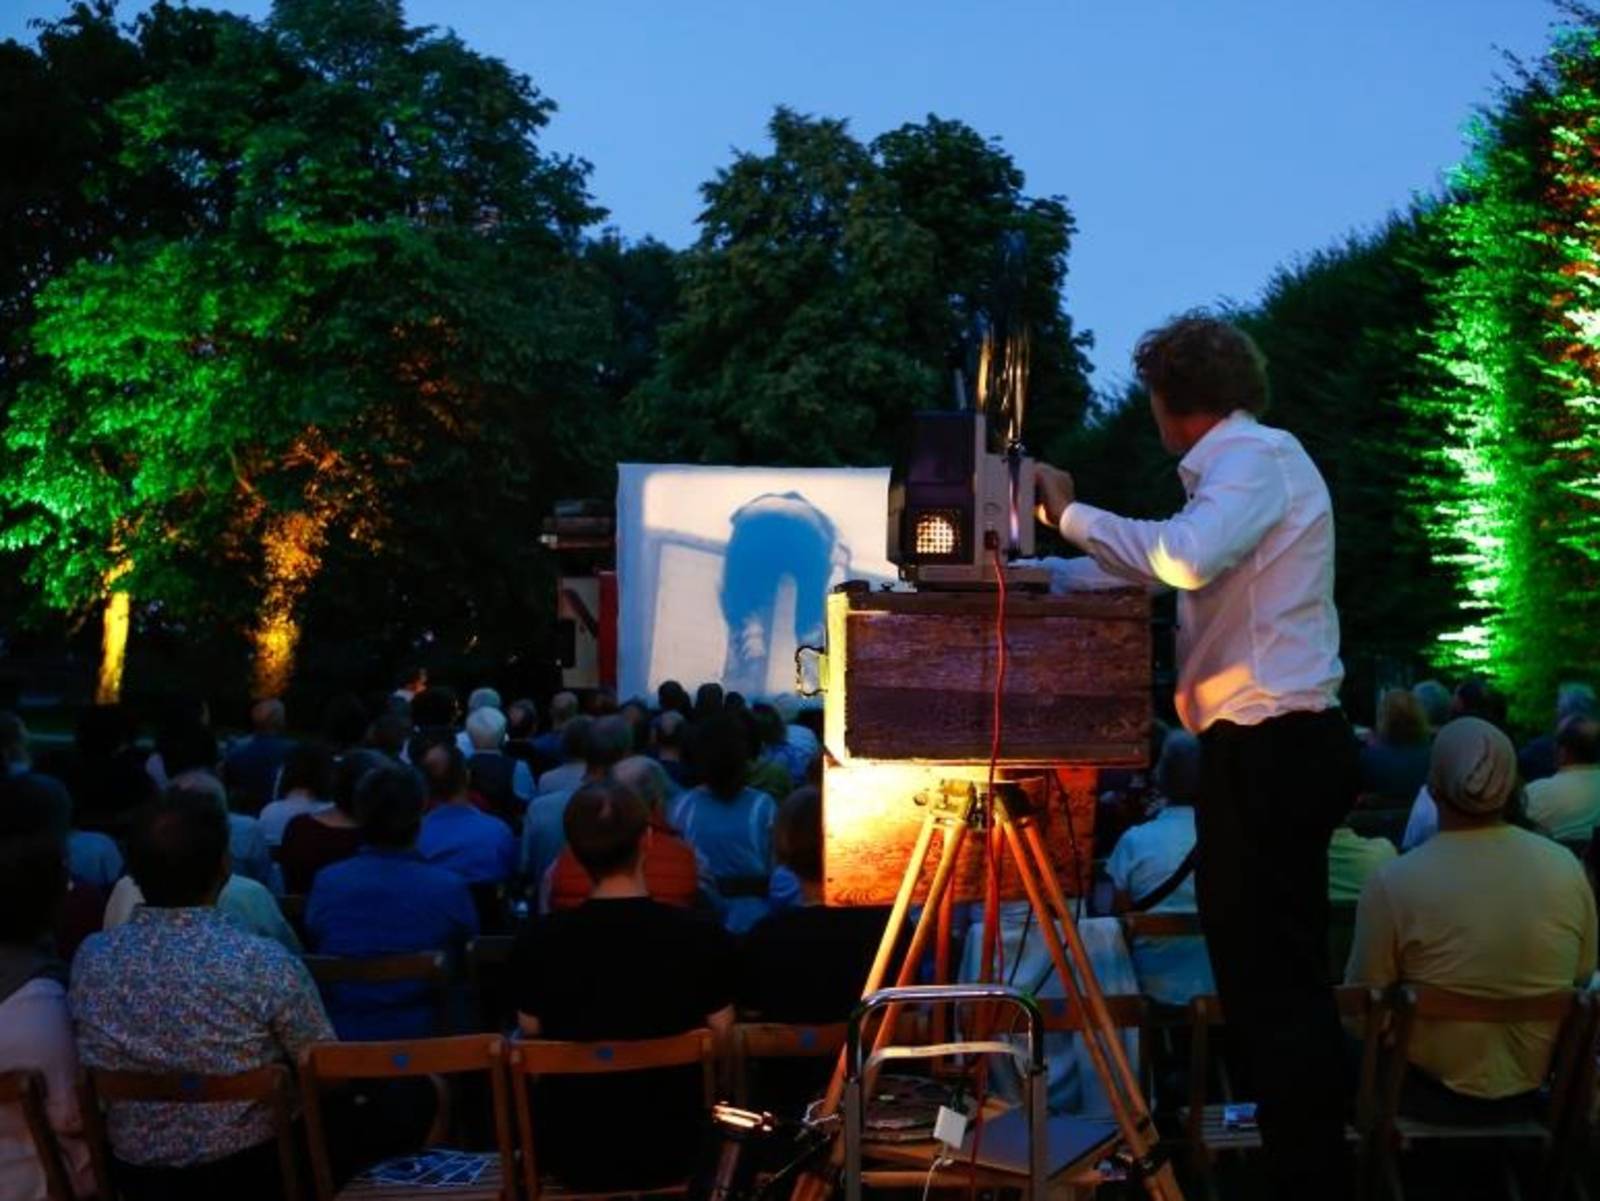 Ein Mann bedient einen Projektor uns wirft die Szene eines Films unter freiem Himmel auf eine Leinwand, Publikum verfolgt den Film.